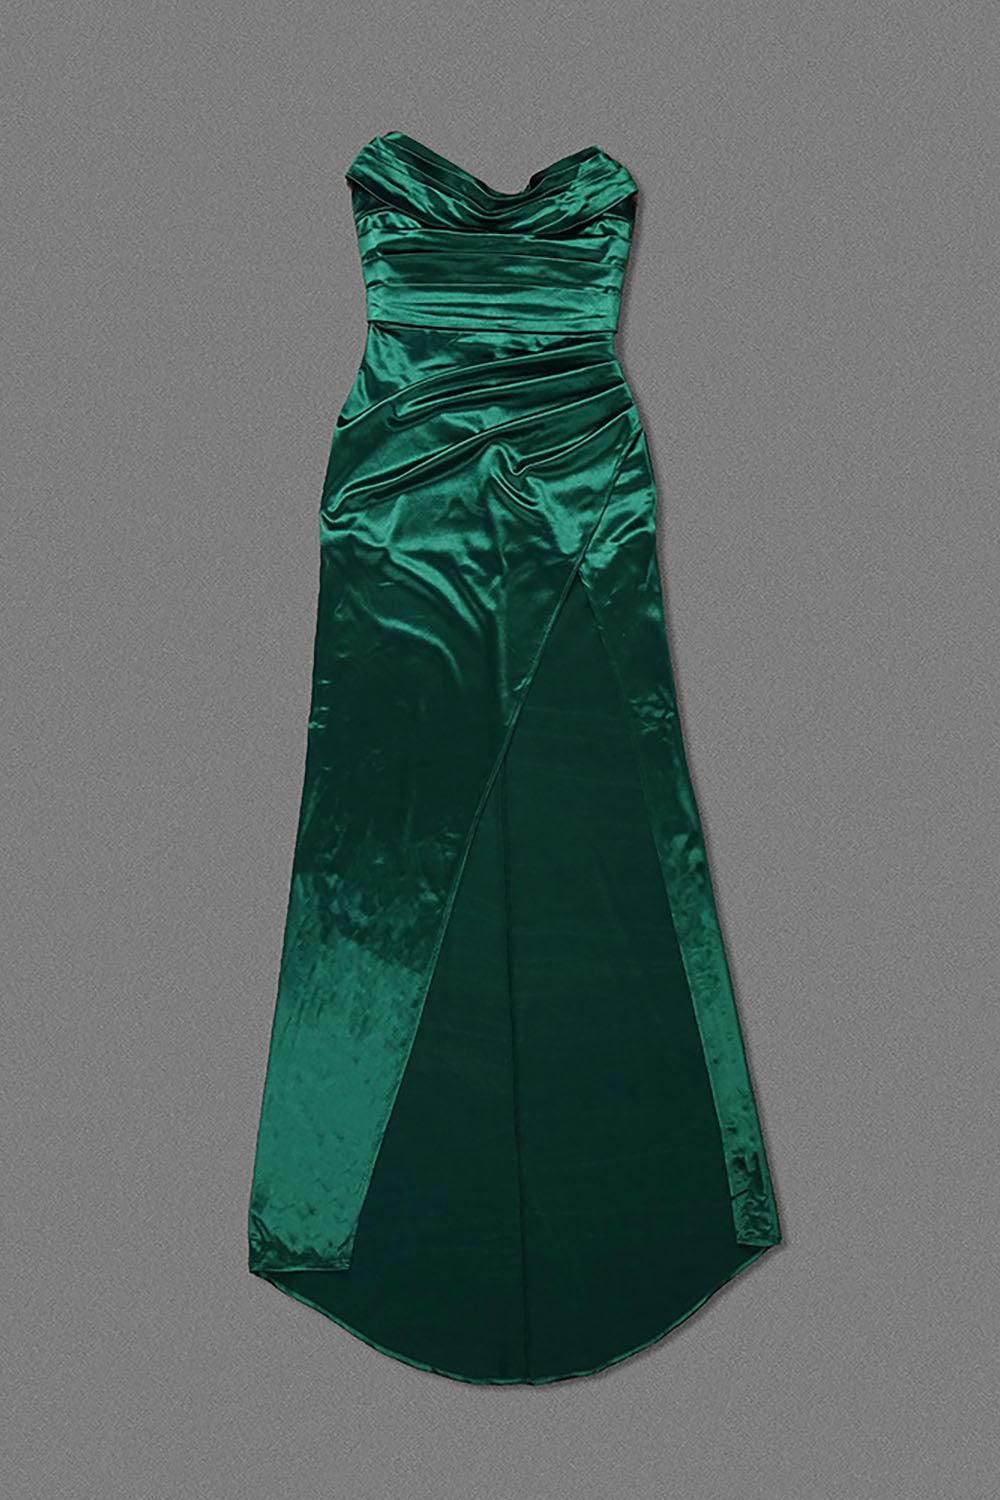 Nagini Green Draped Strapless Maxi Dress w/ Slit